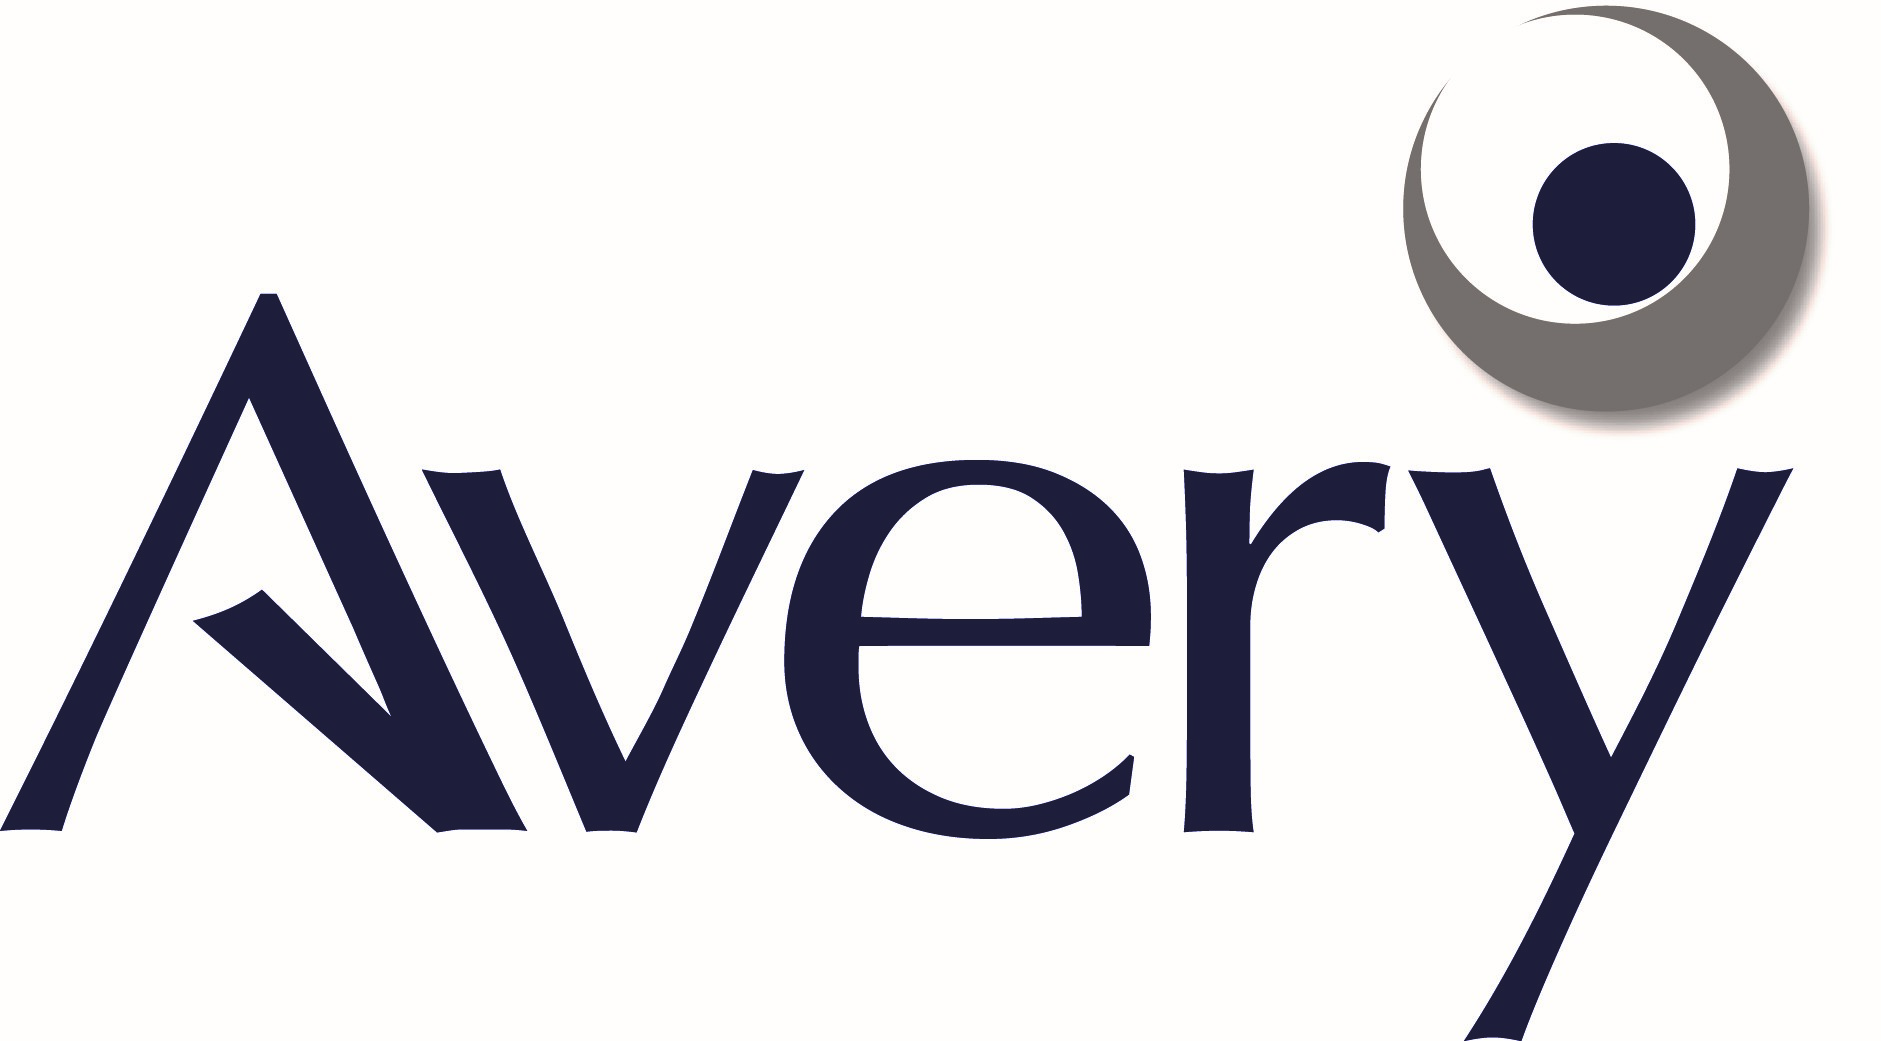 Avery Logo - Avery logo